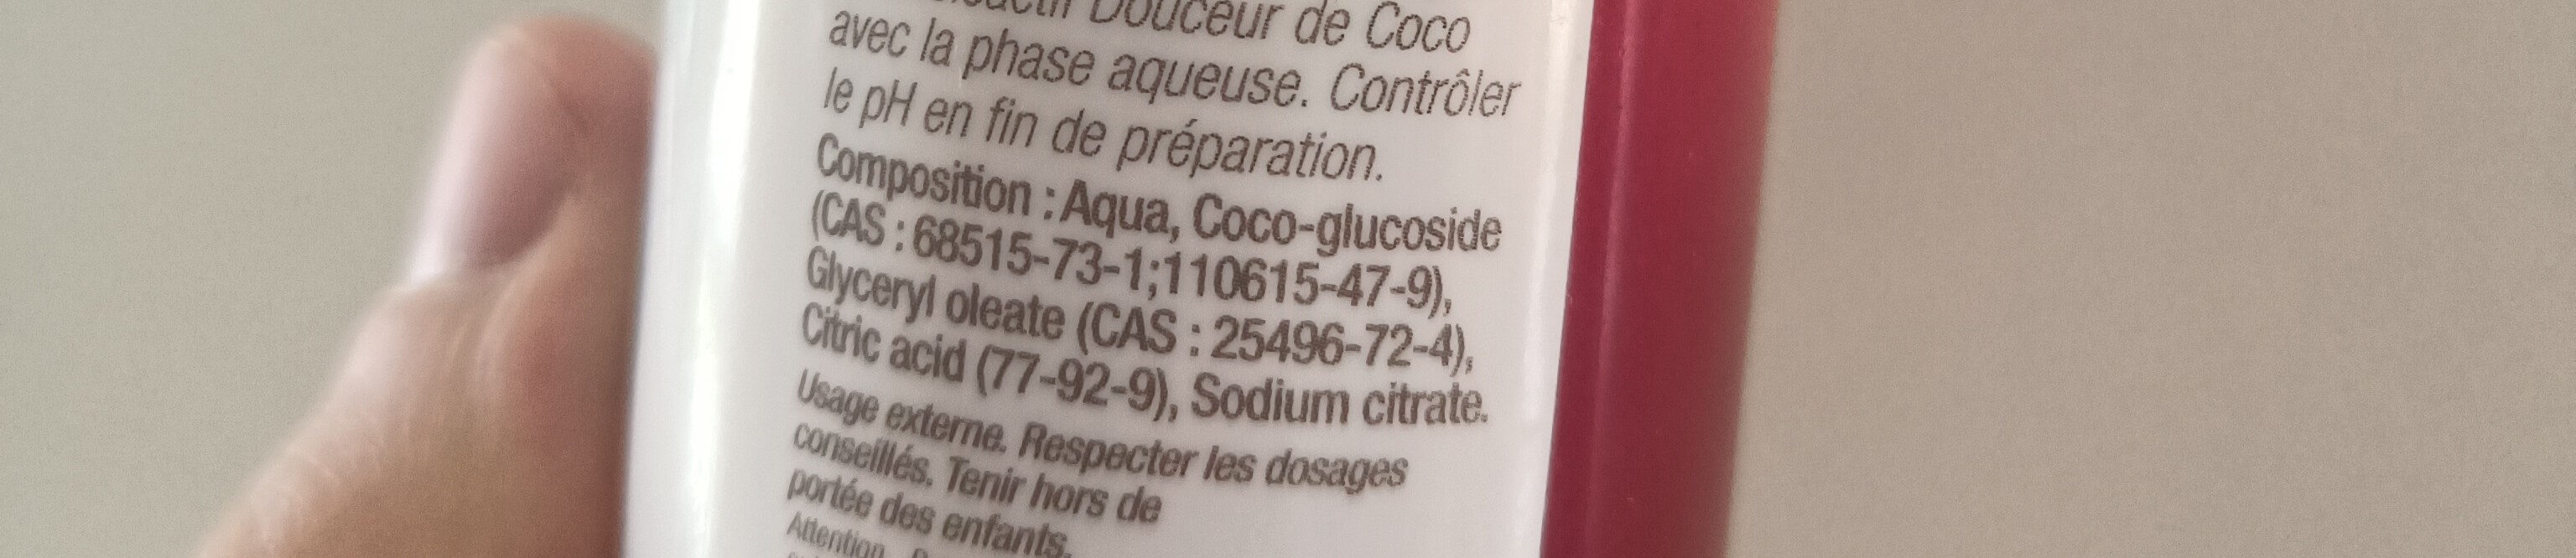 Douceur de coco - Inhaltsstoffe - fr